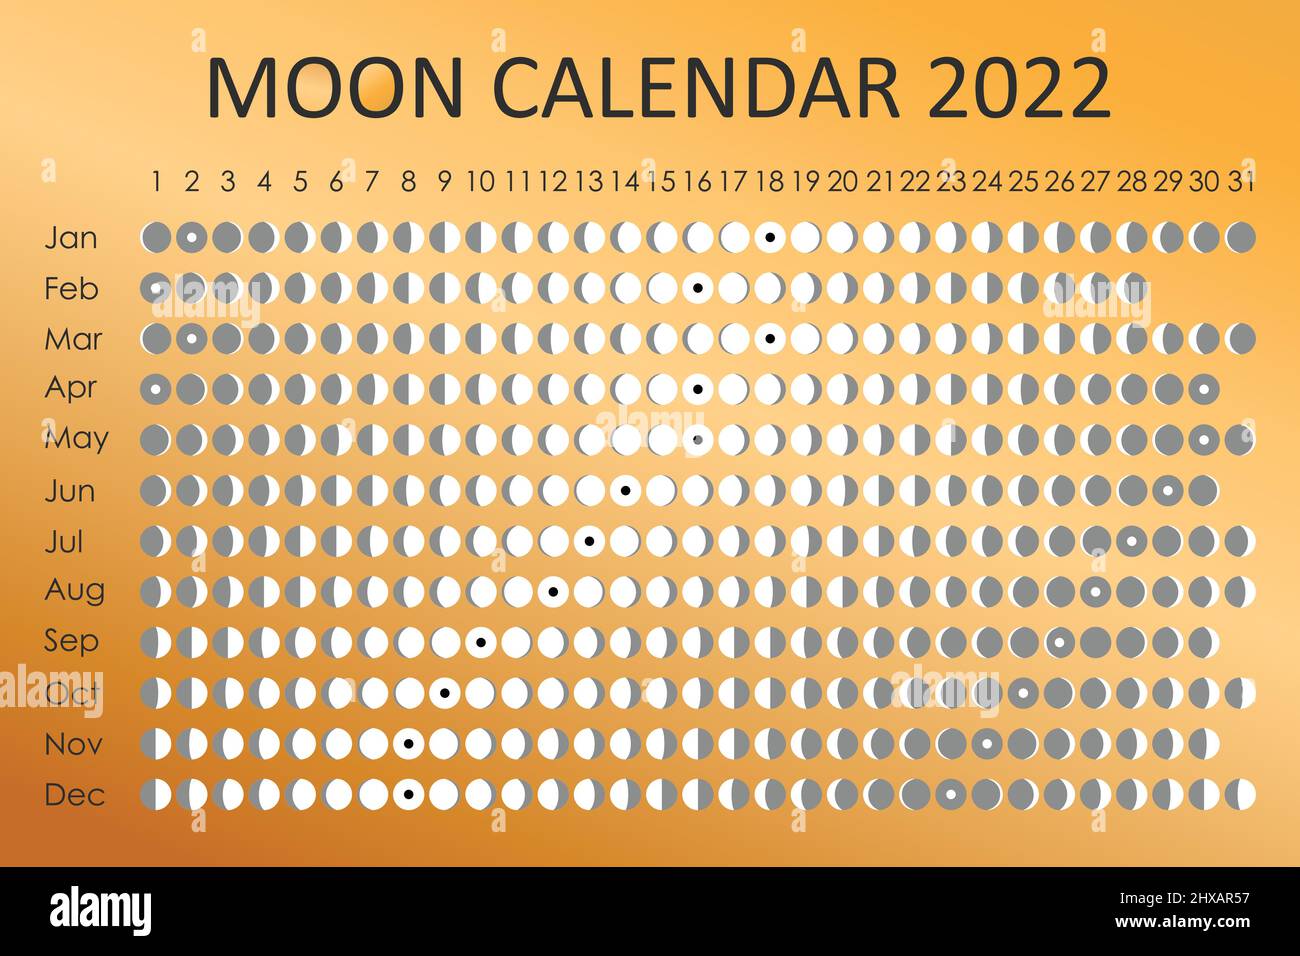 Календарь 2033. Луна календарь вектор. Январь 2033 календарь.